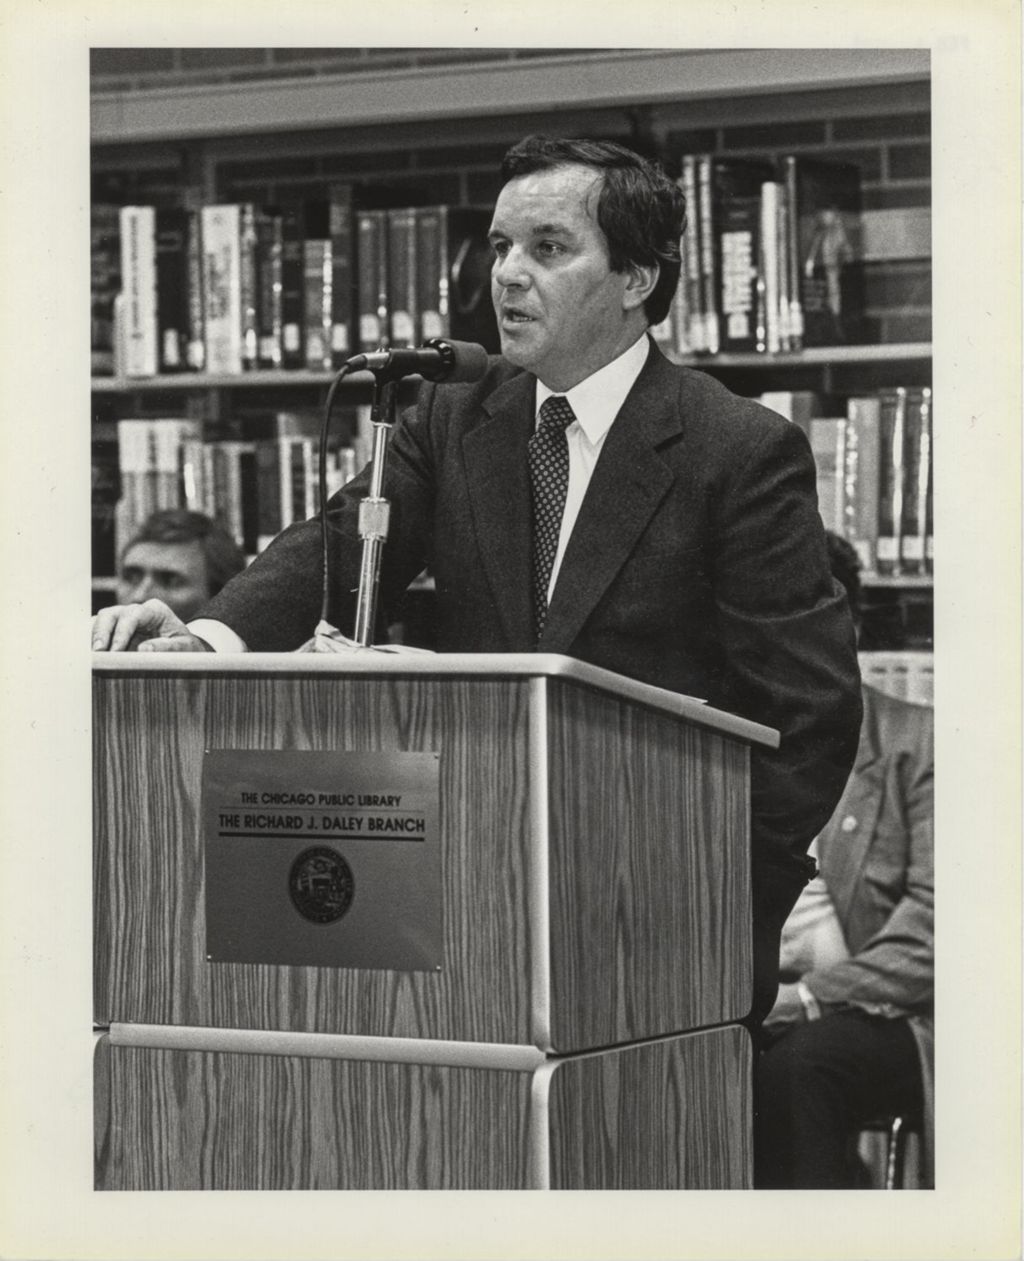 Richard M. Daley at the Richard J. Daley Branch Library dedication